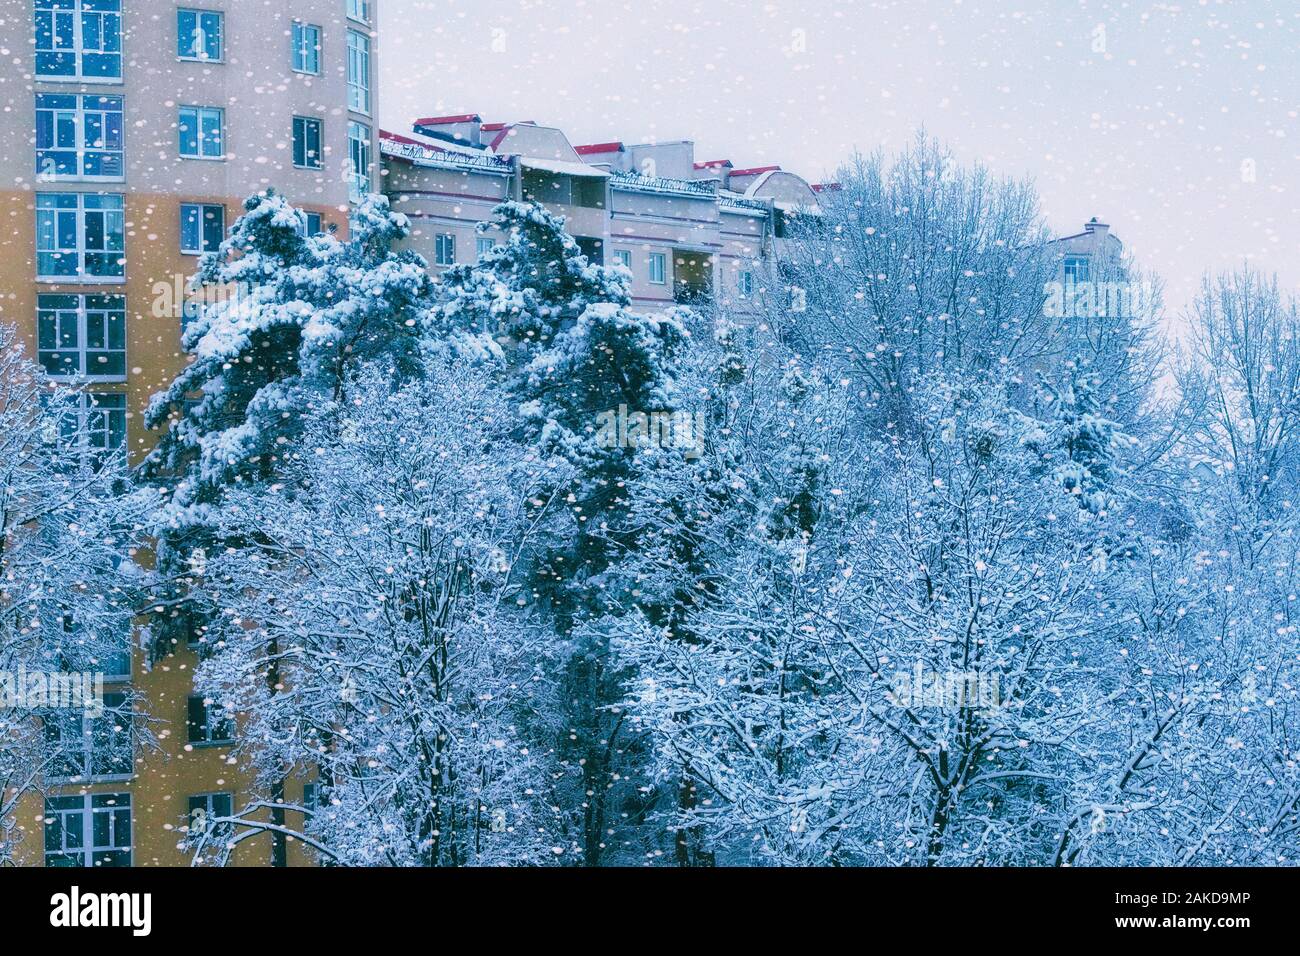 Immeuble en hiver avec de beaux arbres couverts de givre sur l'avant. Neige de décembre. Snowy europen ville. Banque D'Images